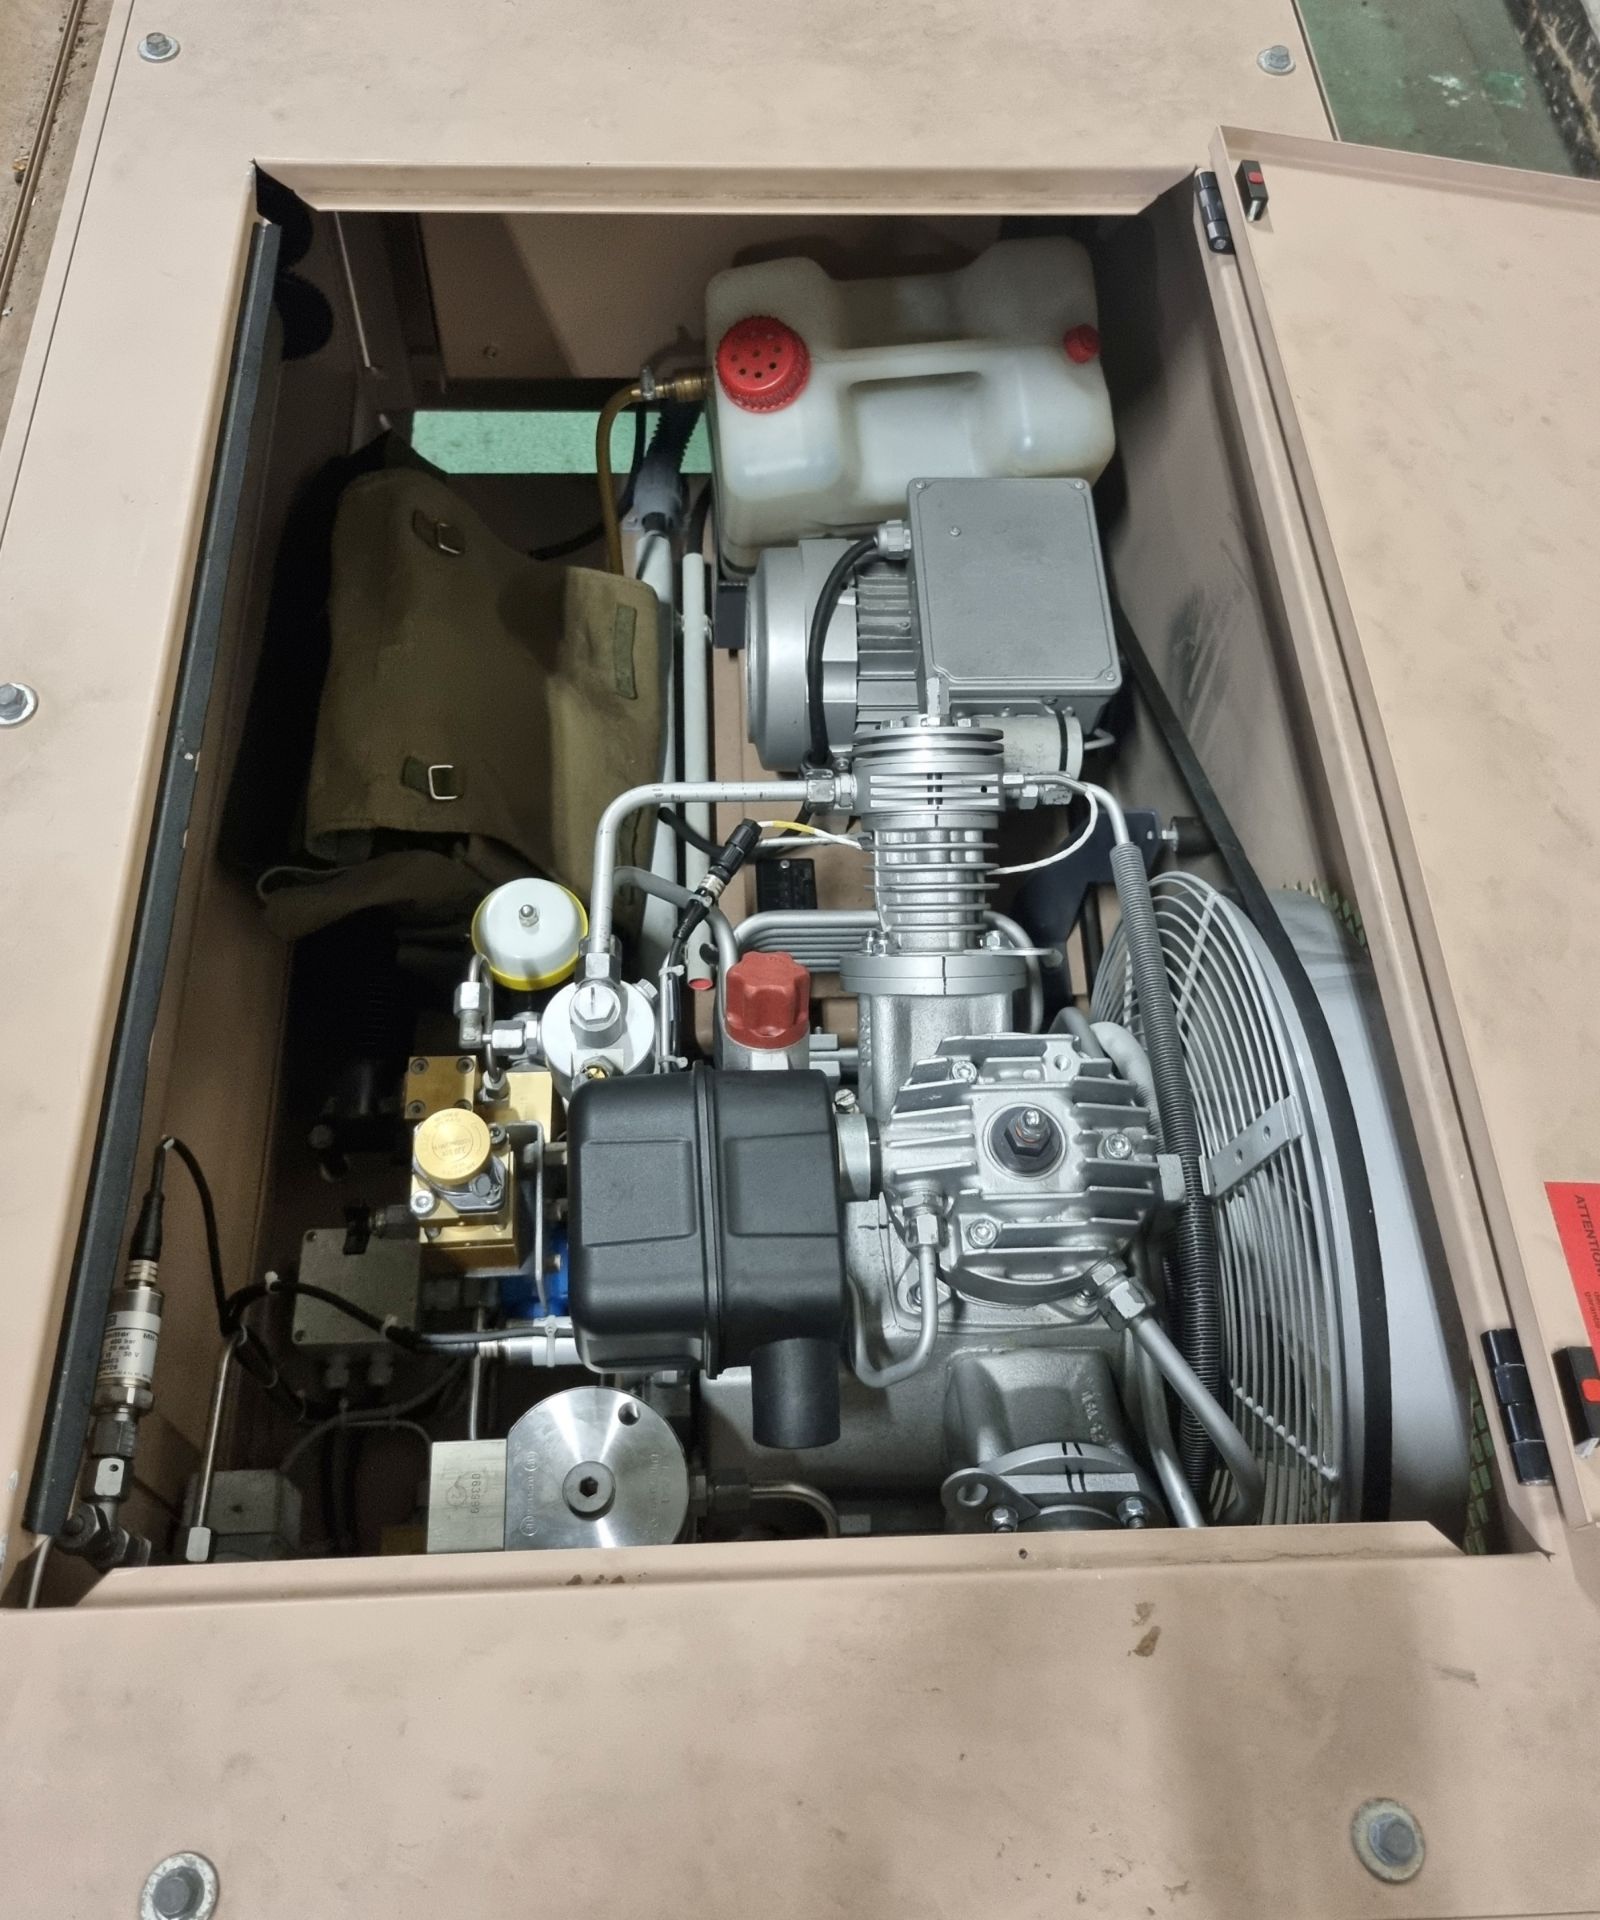 Bauer Compressor unit, Bauer cylinder refill system - see description for details - Image 12 of 16